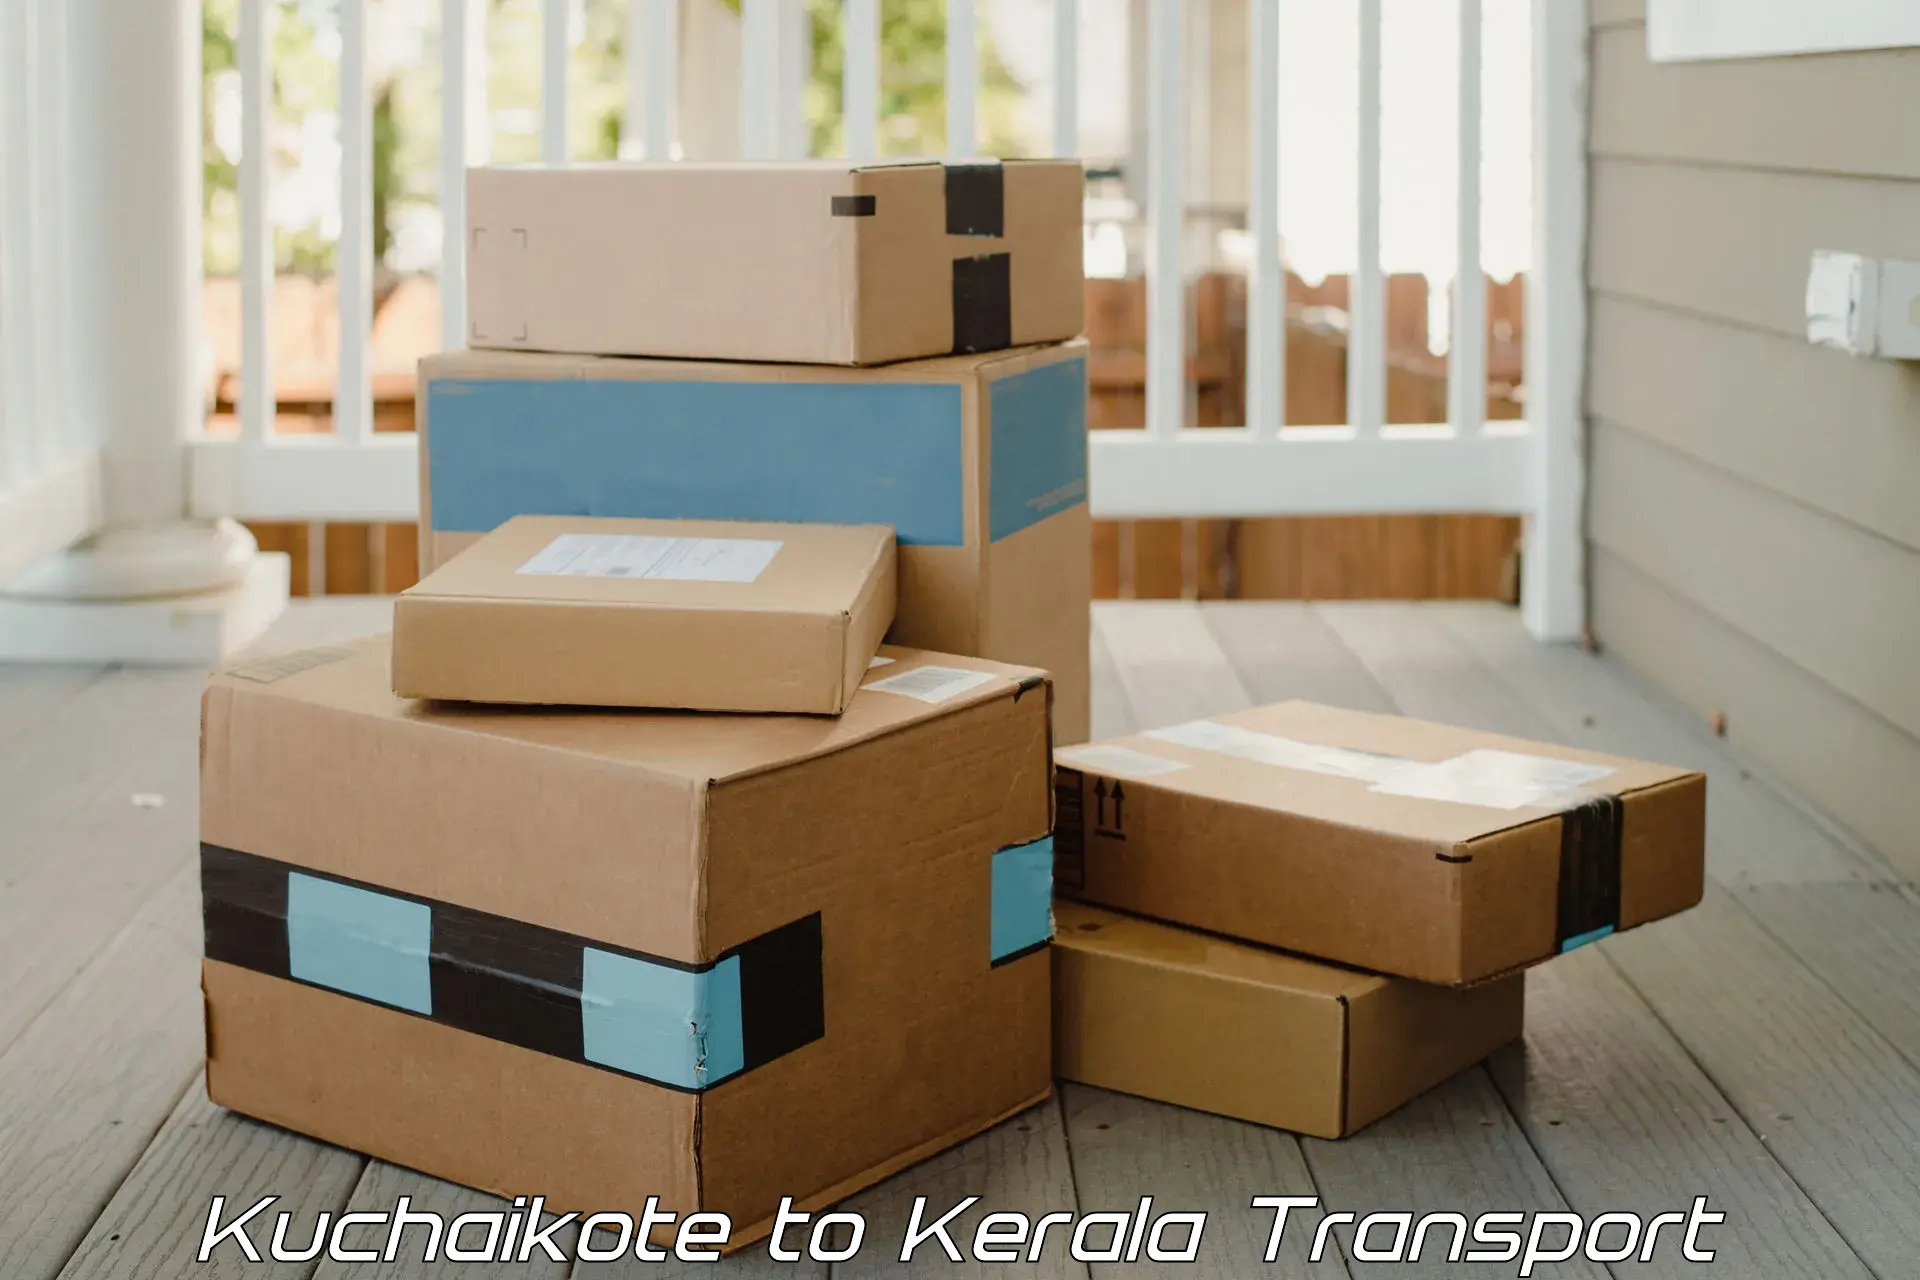 India truck logistics services Kuchaikote to IIT Palakkad